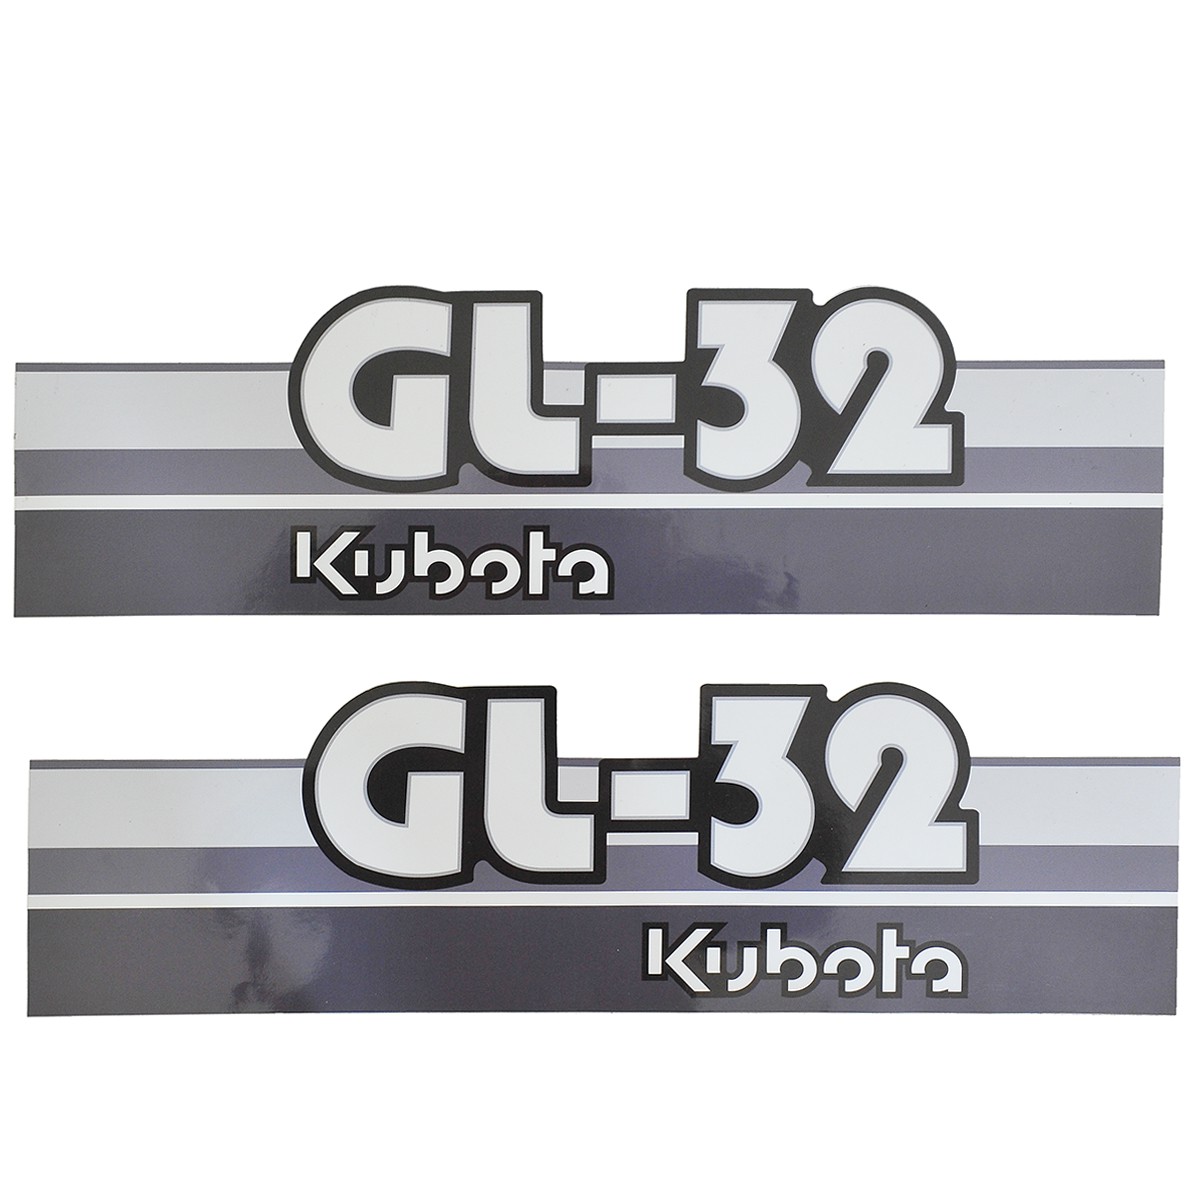 Adhesivos Kubota GL32